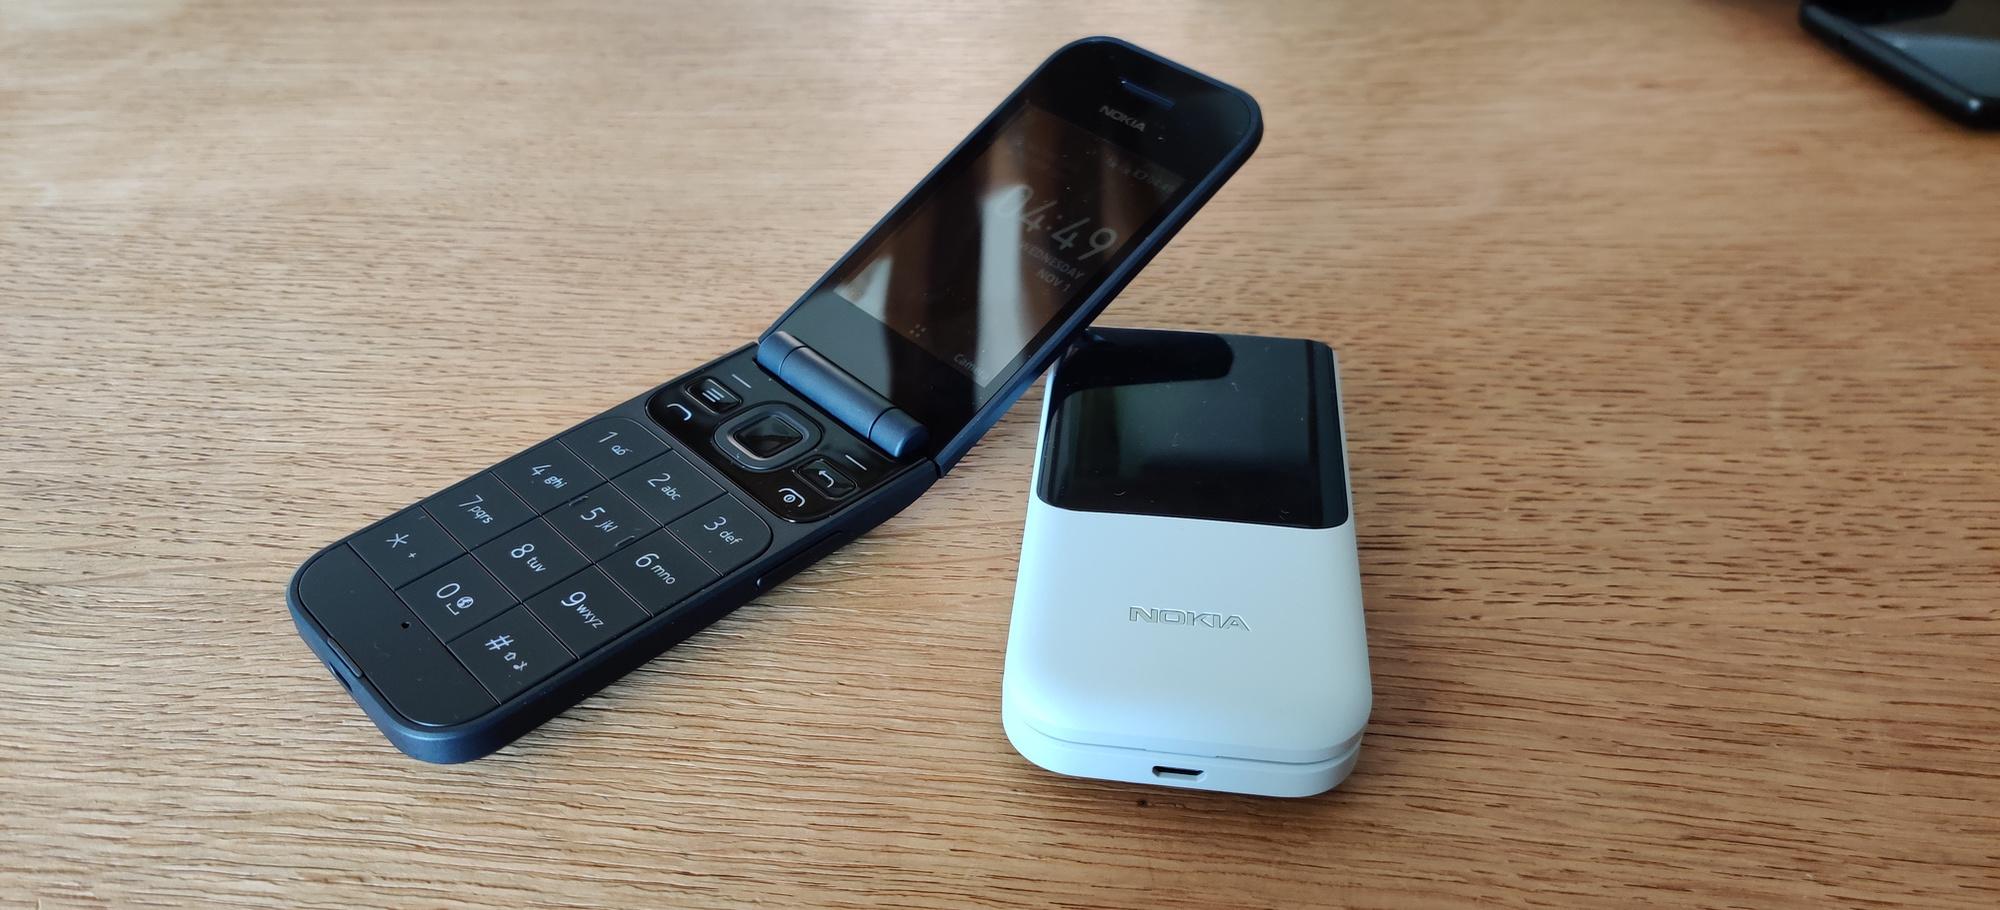 De Nokia 2720 Flip mikt onder meer op gebruikers van een oudere generatie, met grote toetsen en een alarmknop.